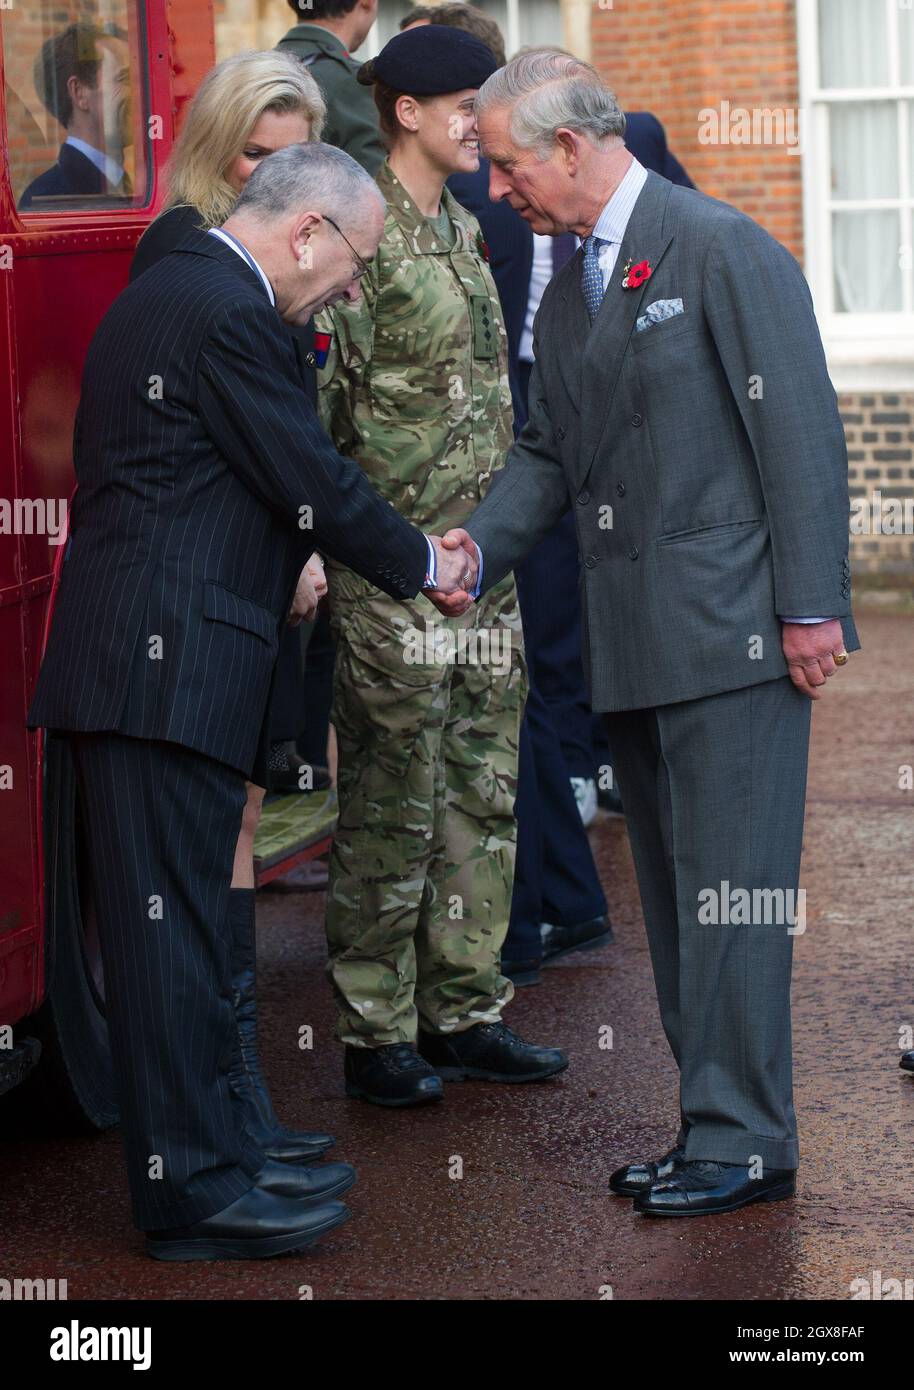 El Príncipe Carlos, Príncipe de Gales, se reúne con embajadores y coleccionistas en el autobús rojo London Poppy Day en Clarence House en Londres. Foto de stock